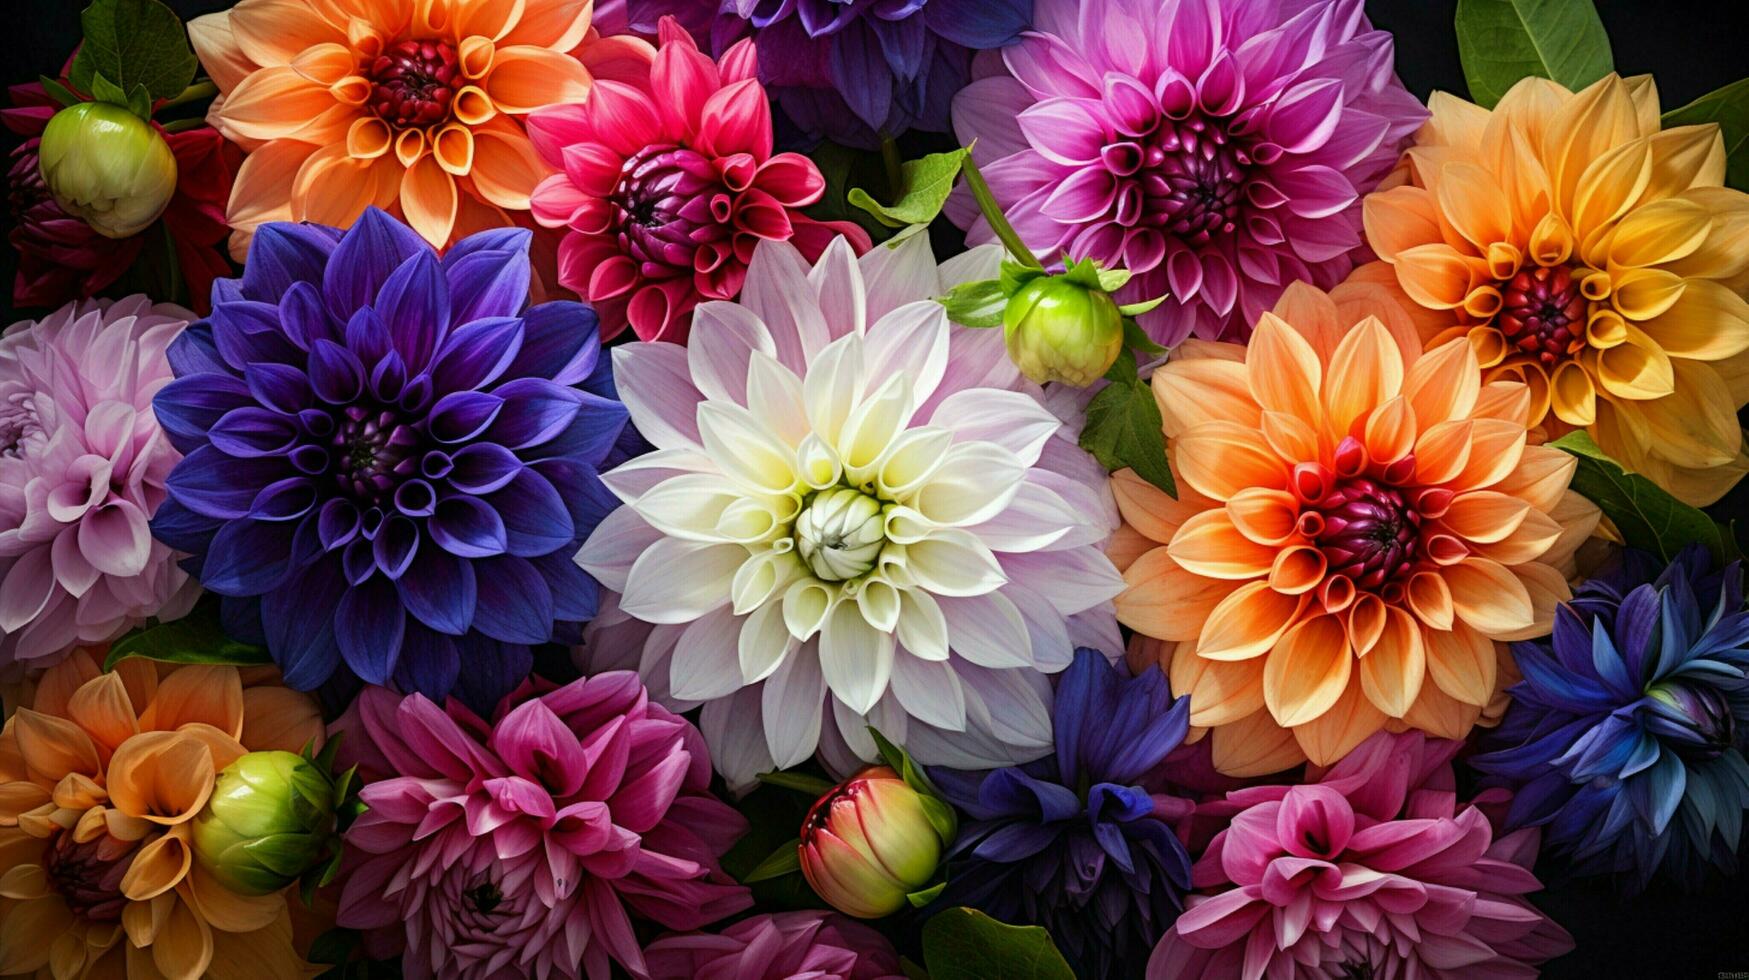 vibrante dálias flor dentro uma colorida ramalhete natureza decoração foto